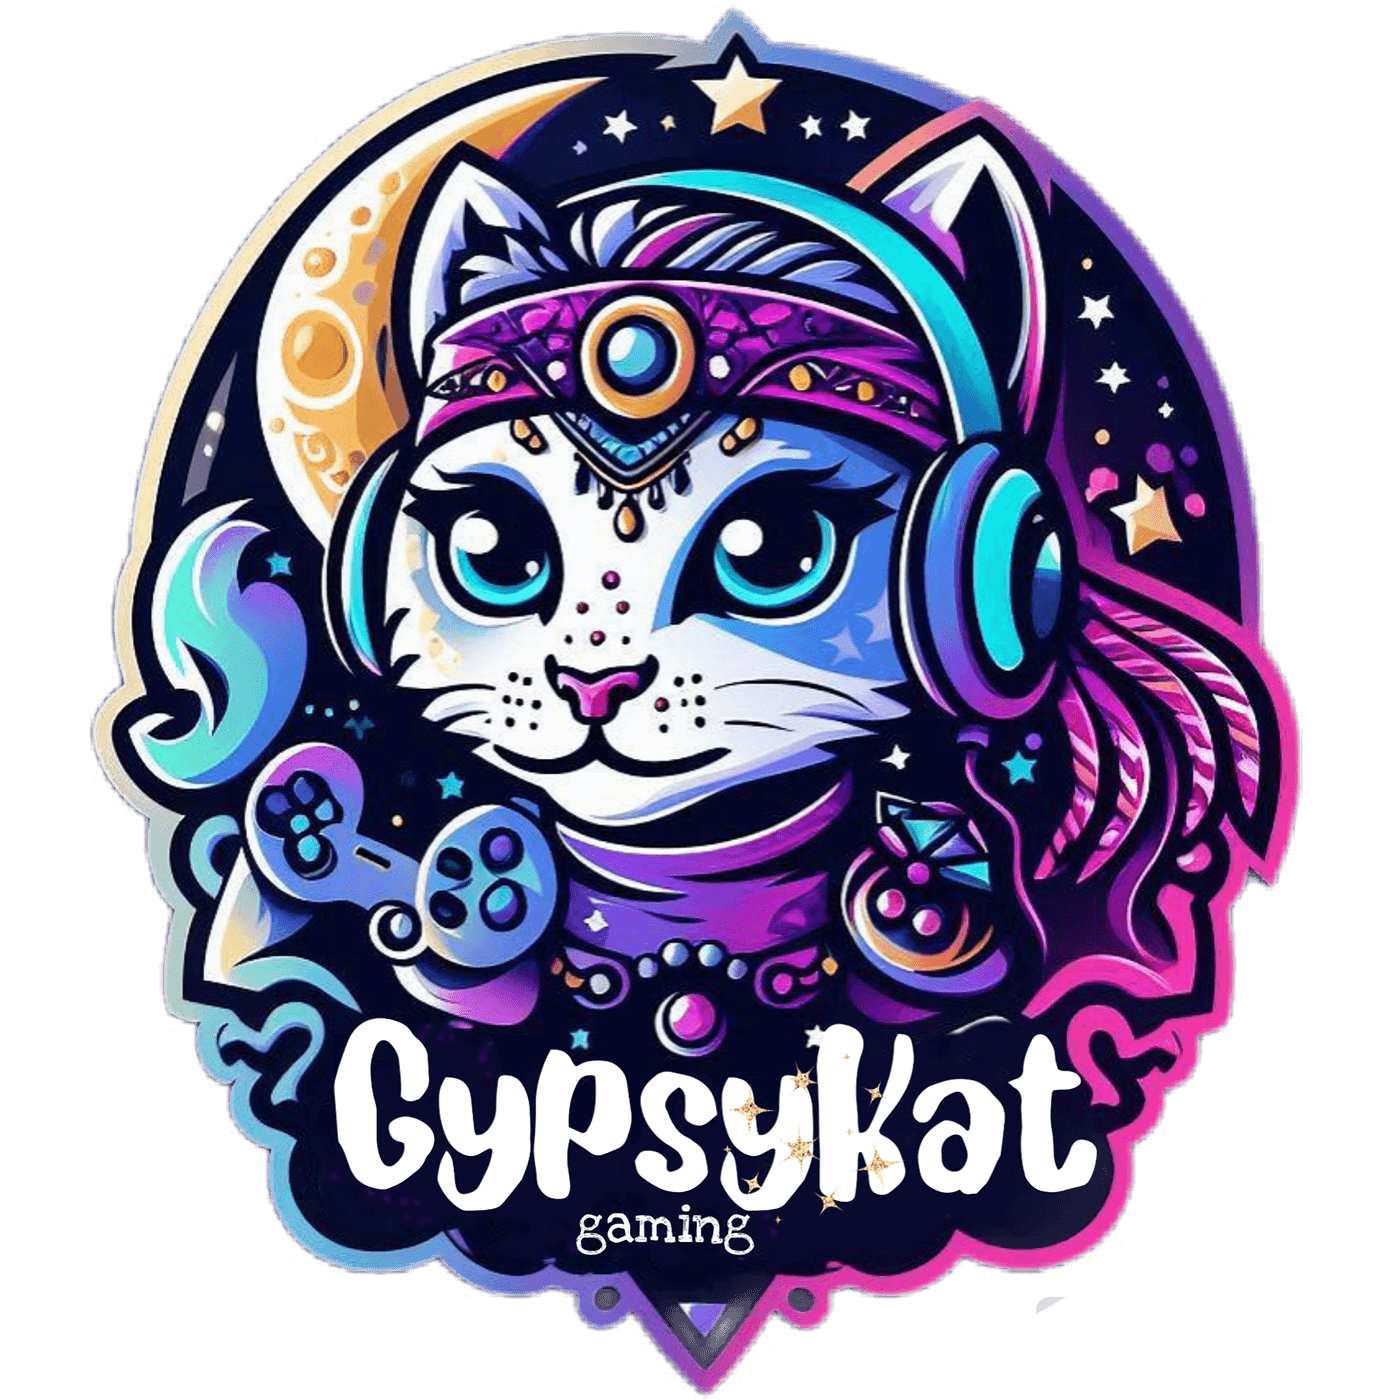 gaminglogo TwitchLogo logo gypsy Cat moon Logotype brand identity Graphic Designer Socialmedia